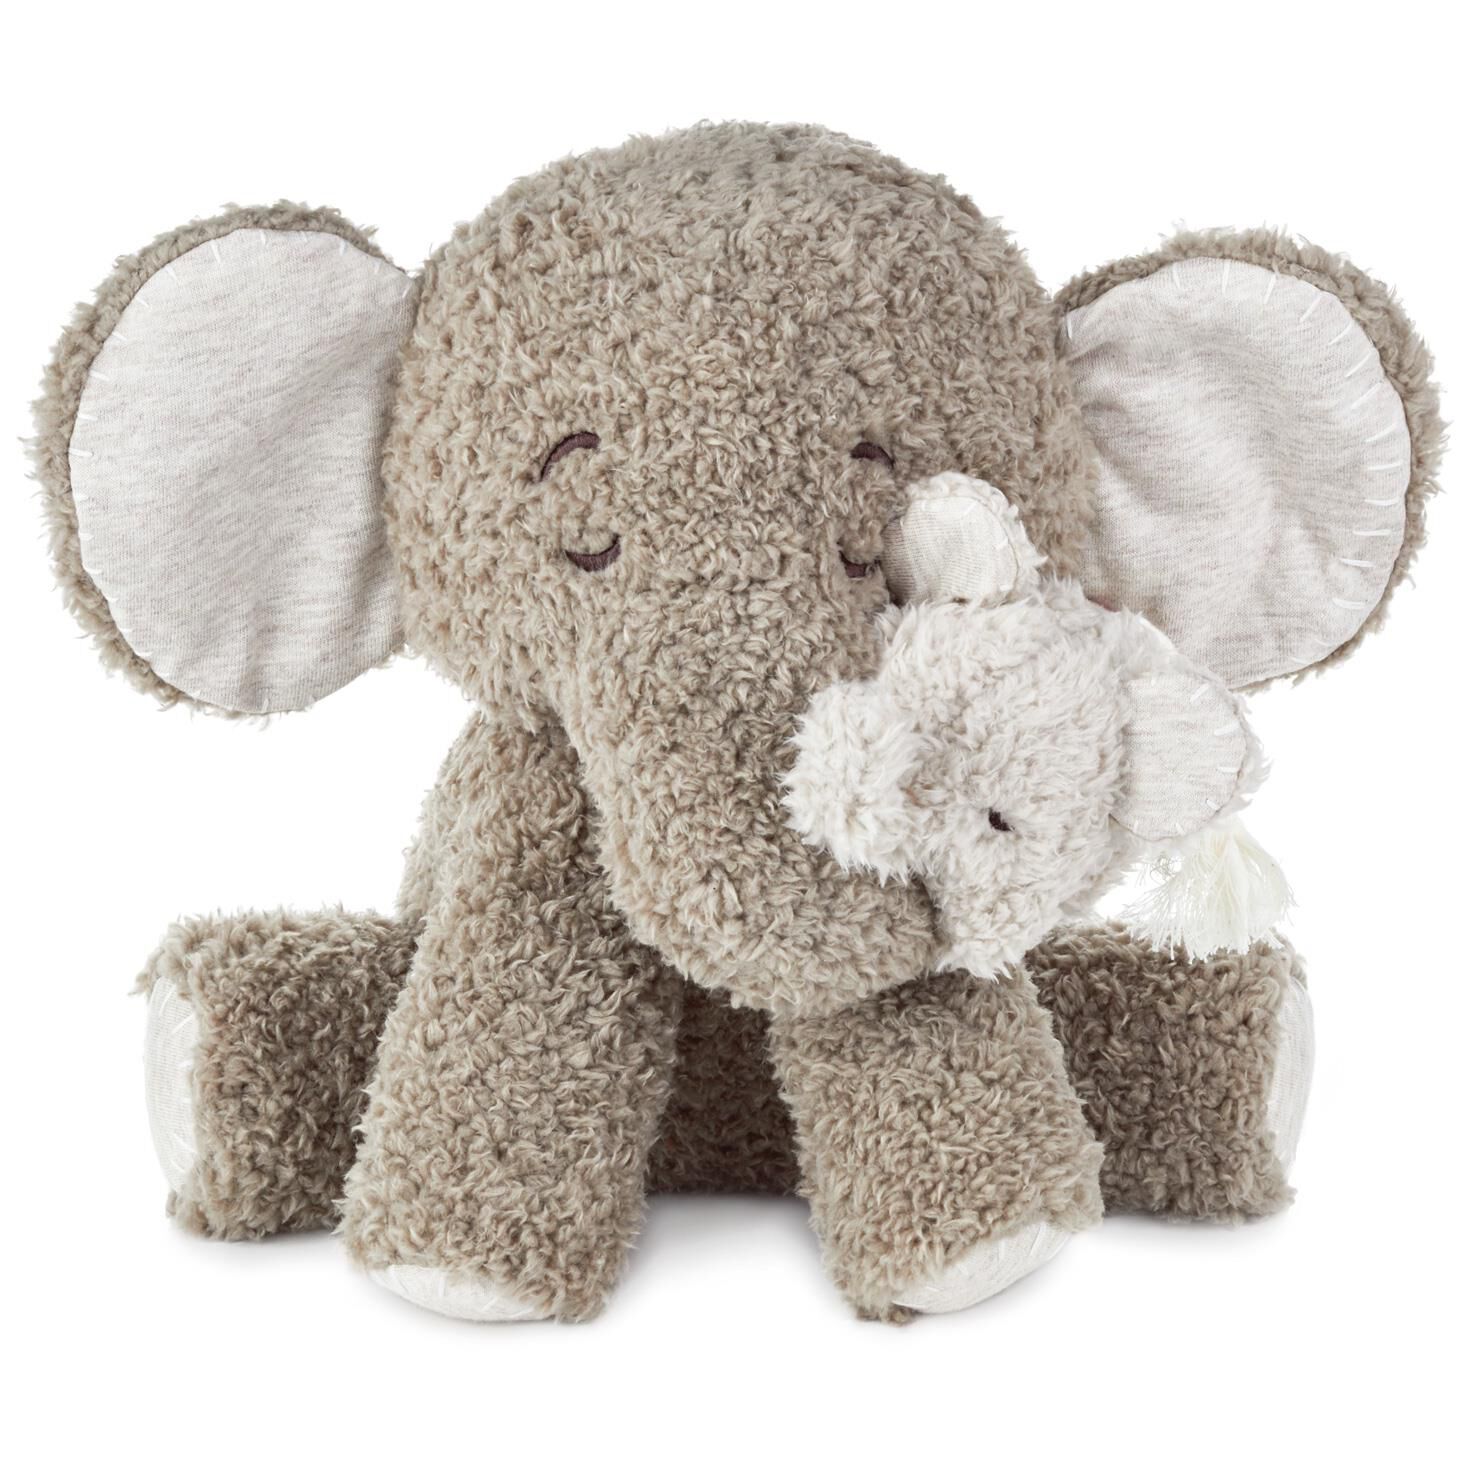 elephant stuffed animal for baby